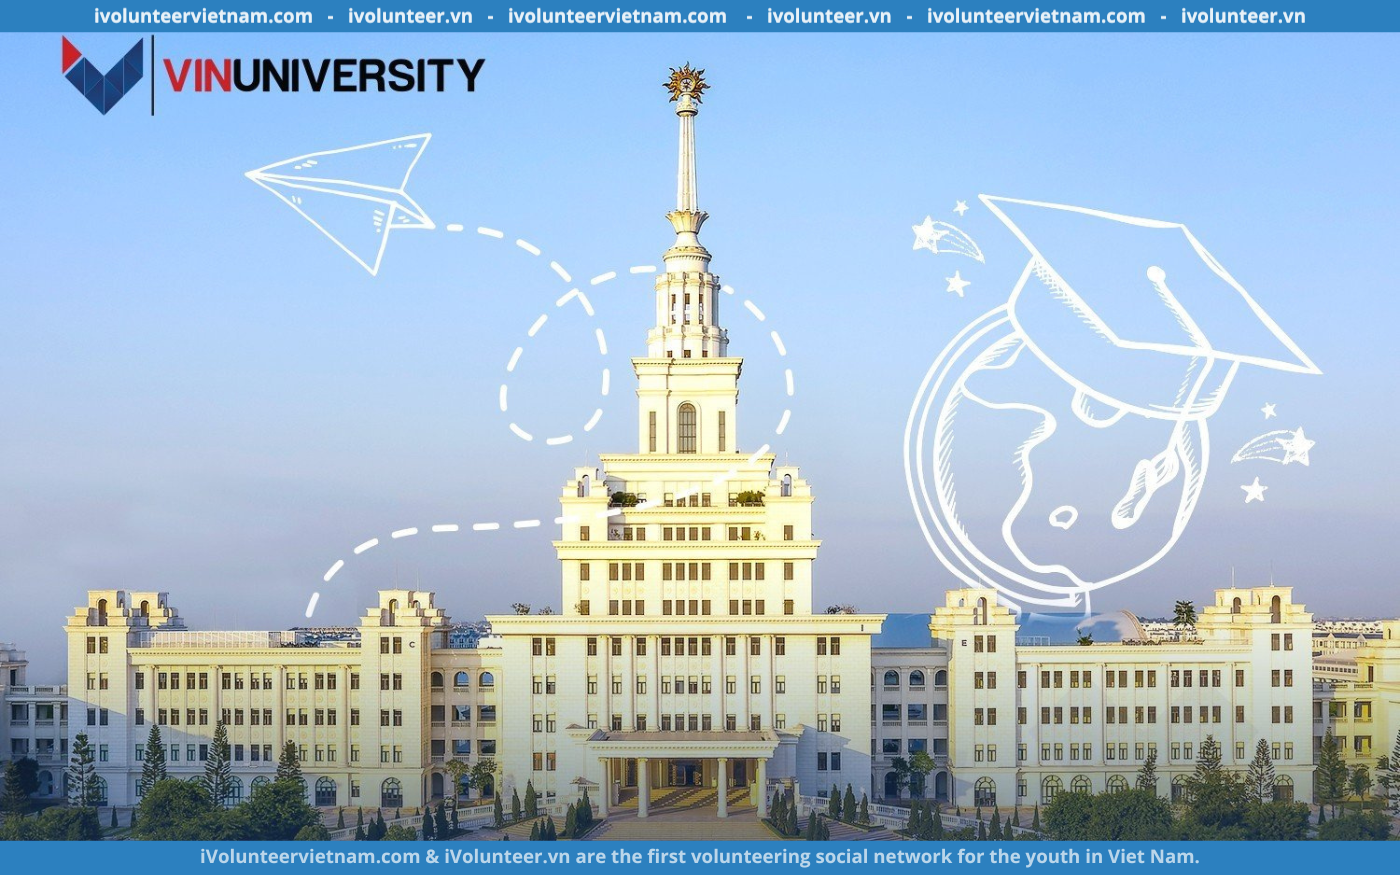 Chương Trình Học Bổng Bán Phần, Toàn Phần Bậc Cử Nhân Speed Application Tại Vin University 2023